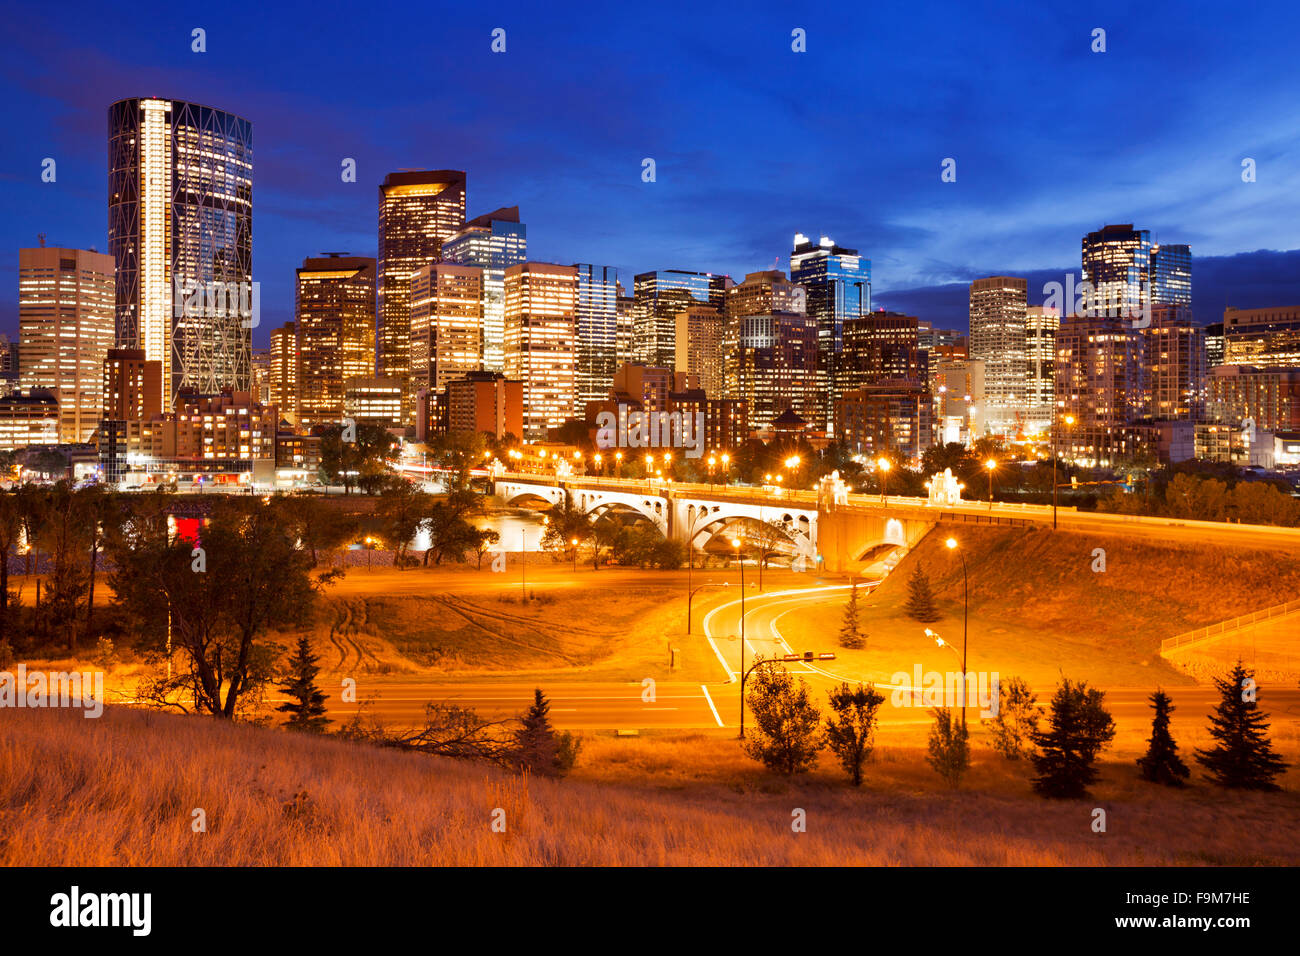 Die Skyline der Innenstadt von Calgary, Alberta, Kanada, in der Dämmerung fotografiert. Stockfoto